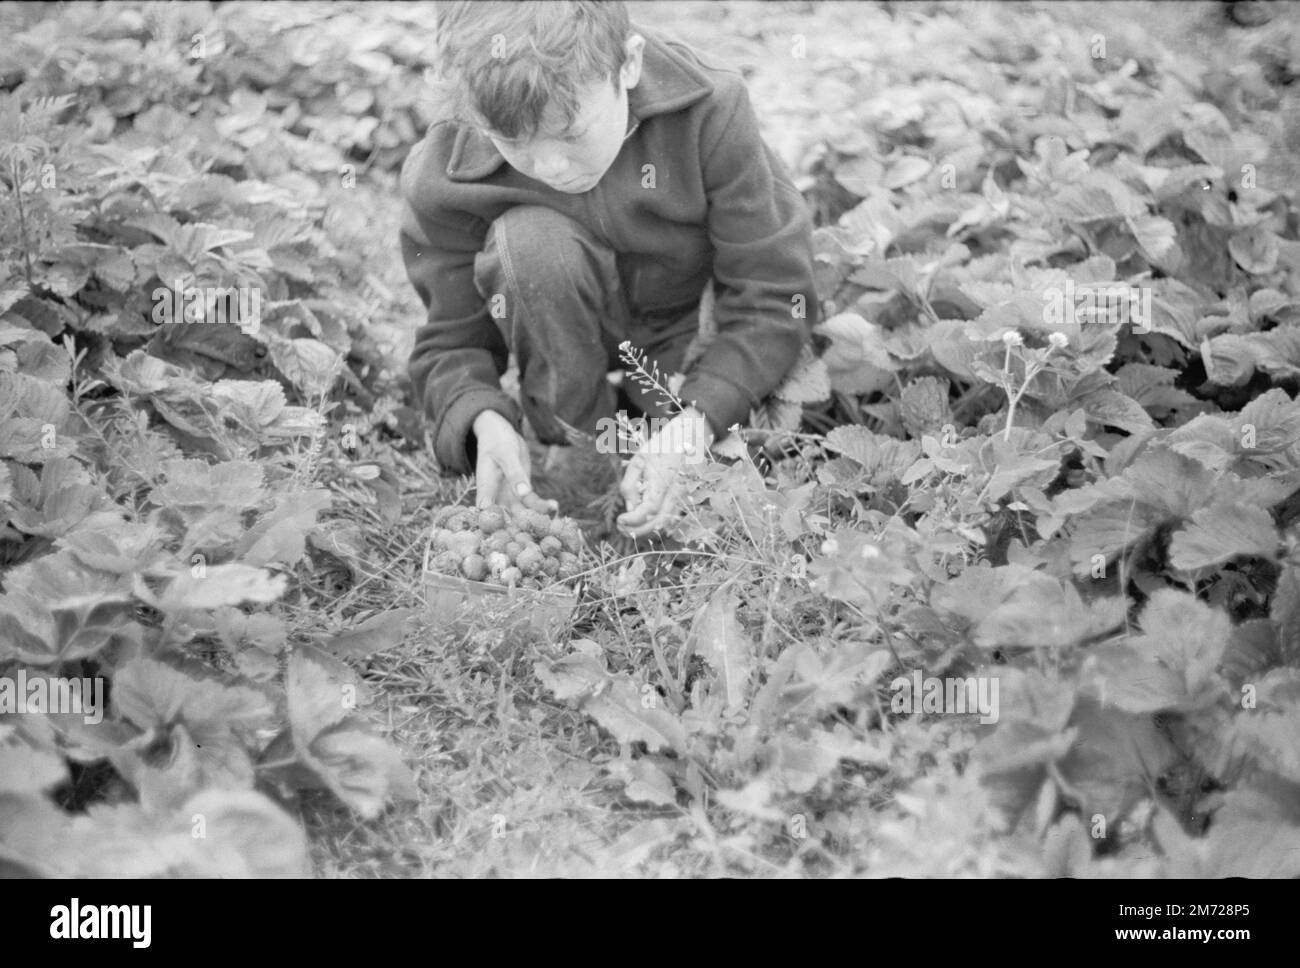 Garçon cueillant des fraises dans le comté de Berrien, Michigan. Photo historique. Vachon, John, photographe. Vers 1940. Banque D'Images